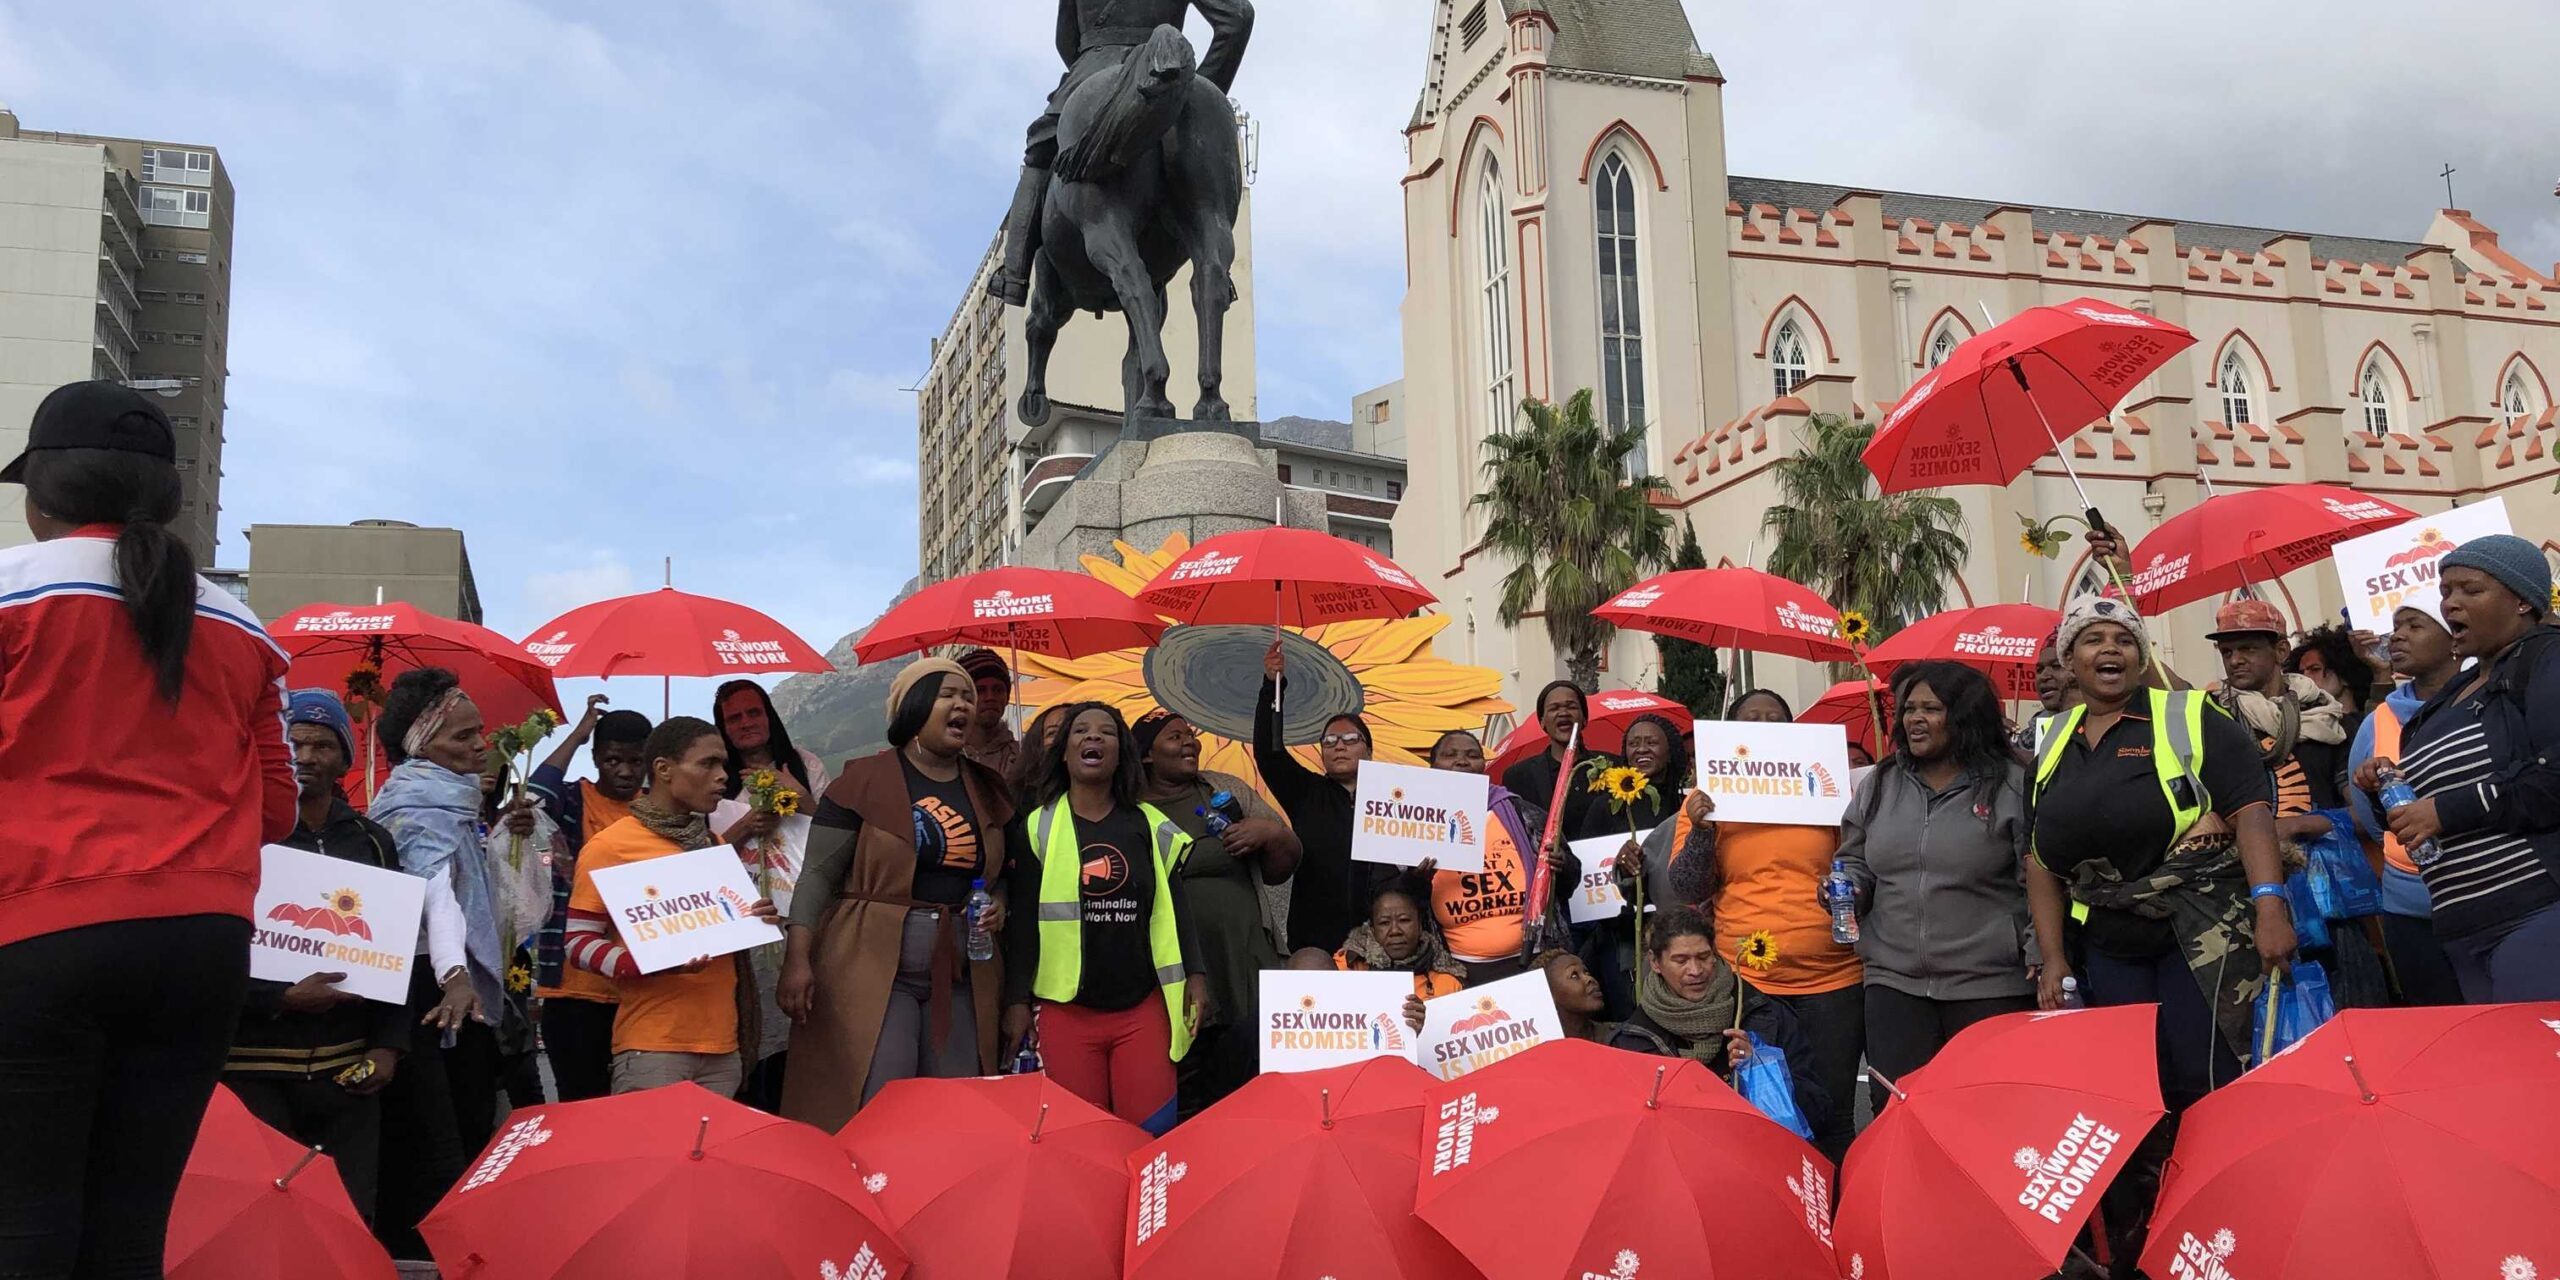 Henkilöitä seksityötä puolustavassa mielenosoituksessa. Monella on punainen sateenvarjo, jossa lukee "Sex work is work" ja "Sex Work Promise".